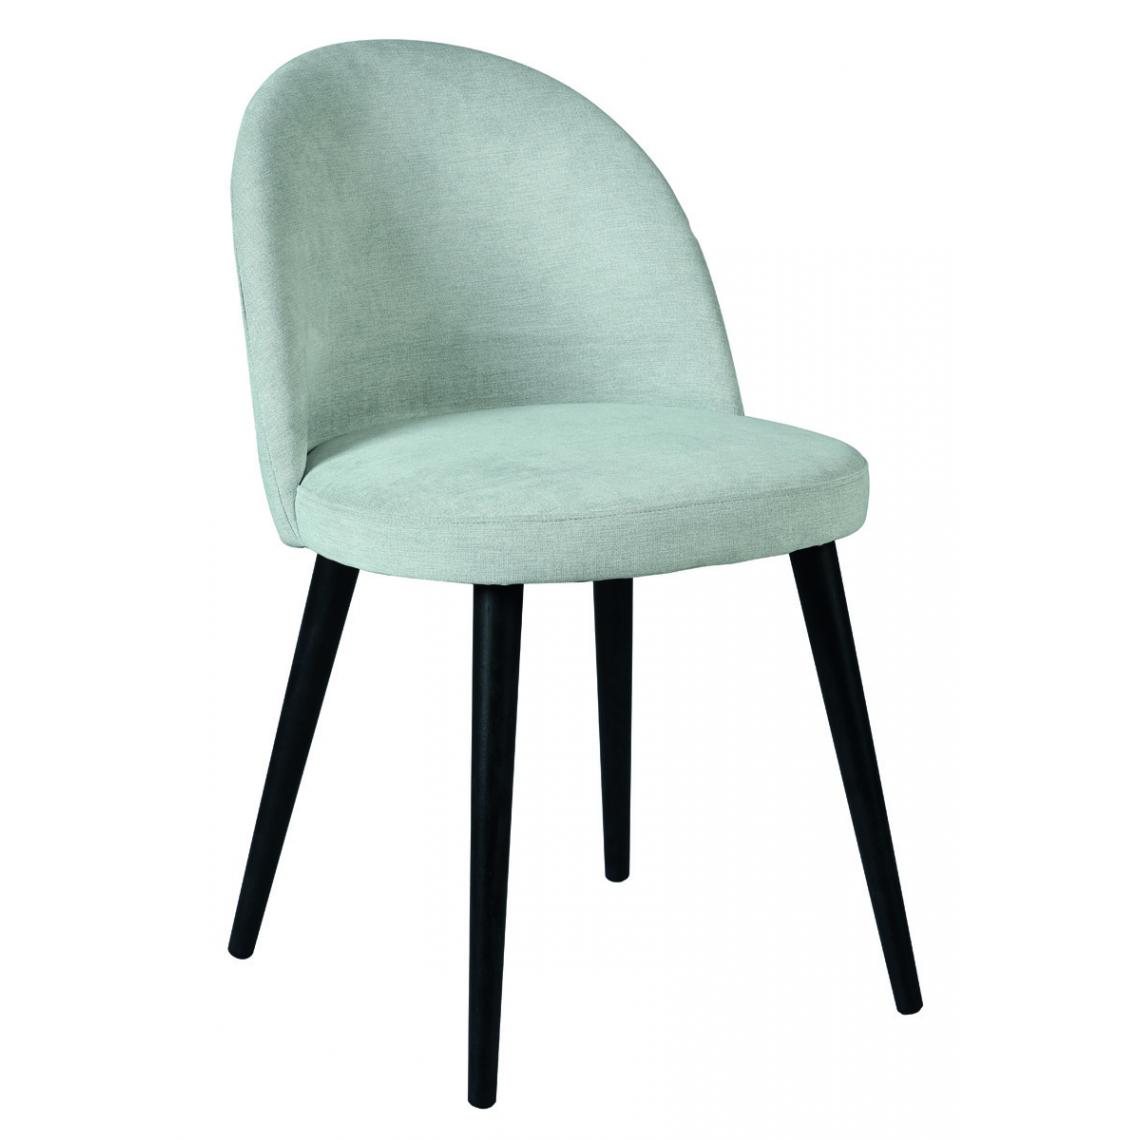 Pegane - Lot de 2 chaises coloris anthracite en bois / polyester - Longueur 46 x Profondeur 62 x hauteur 101 x hauteur assise 49 cm - Chaises